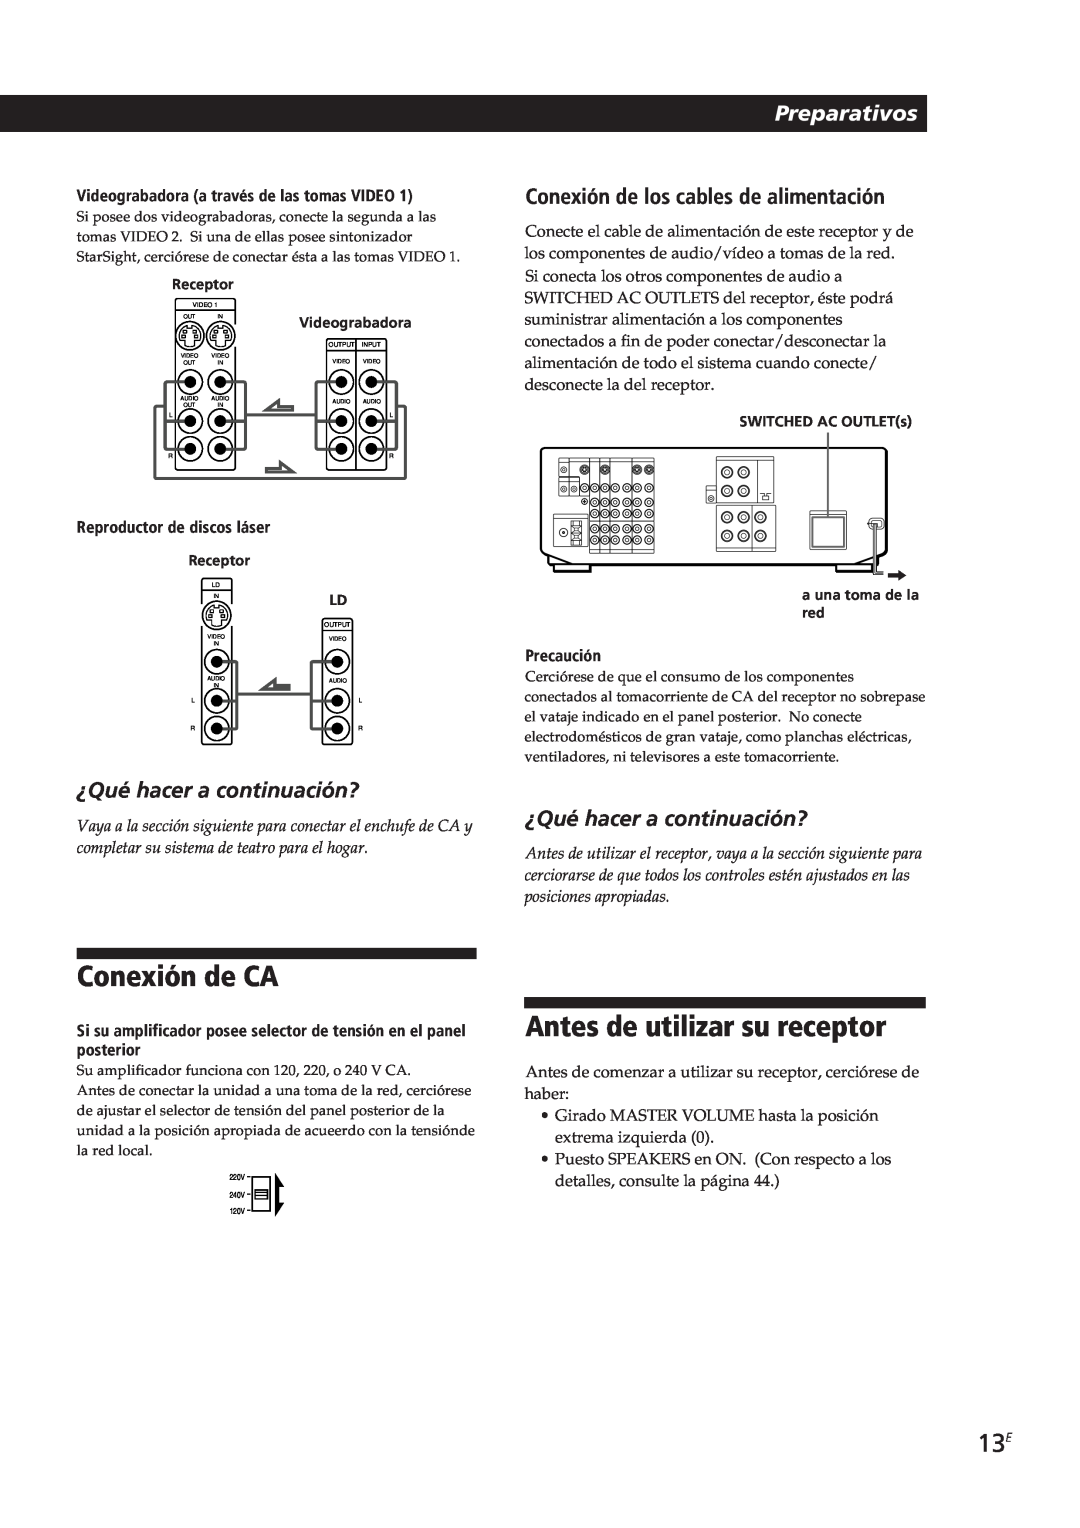 Sony STR-DE805G manual Conexión de CA, Antes de utilizar su receptor, Preparativos, ¿Qué hacer a continuación?, Precaución 